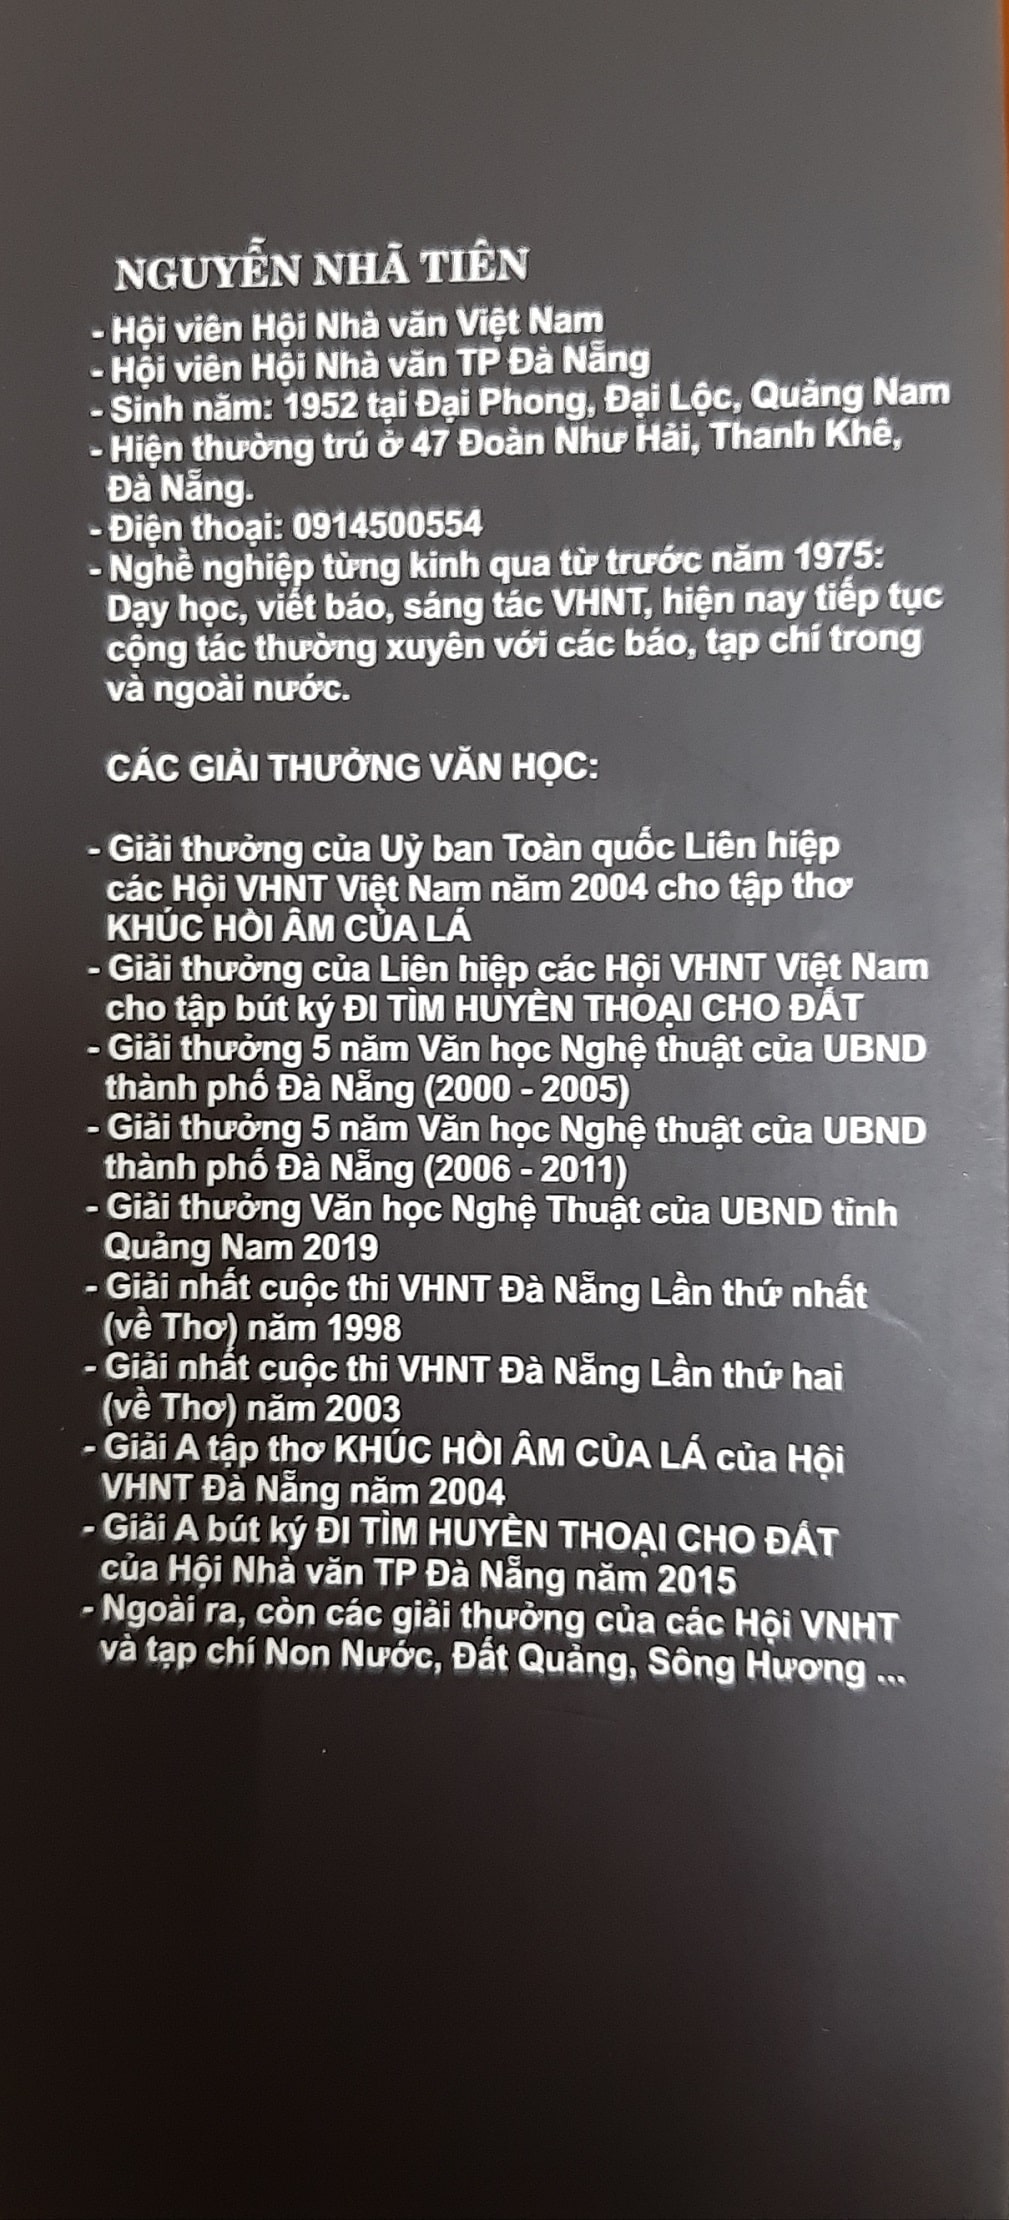 20221011 101851 min - Tác giả Nguyễn Nhã Tiên